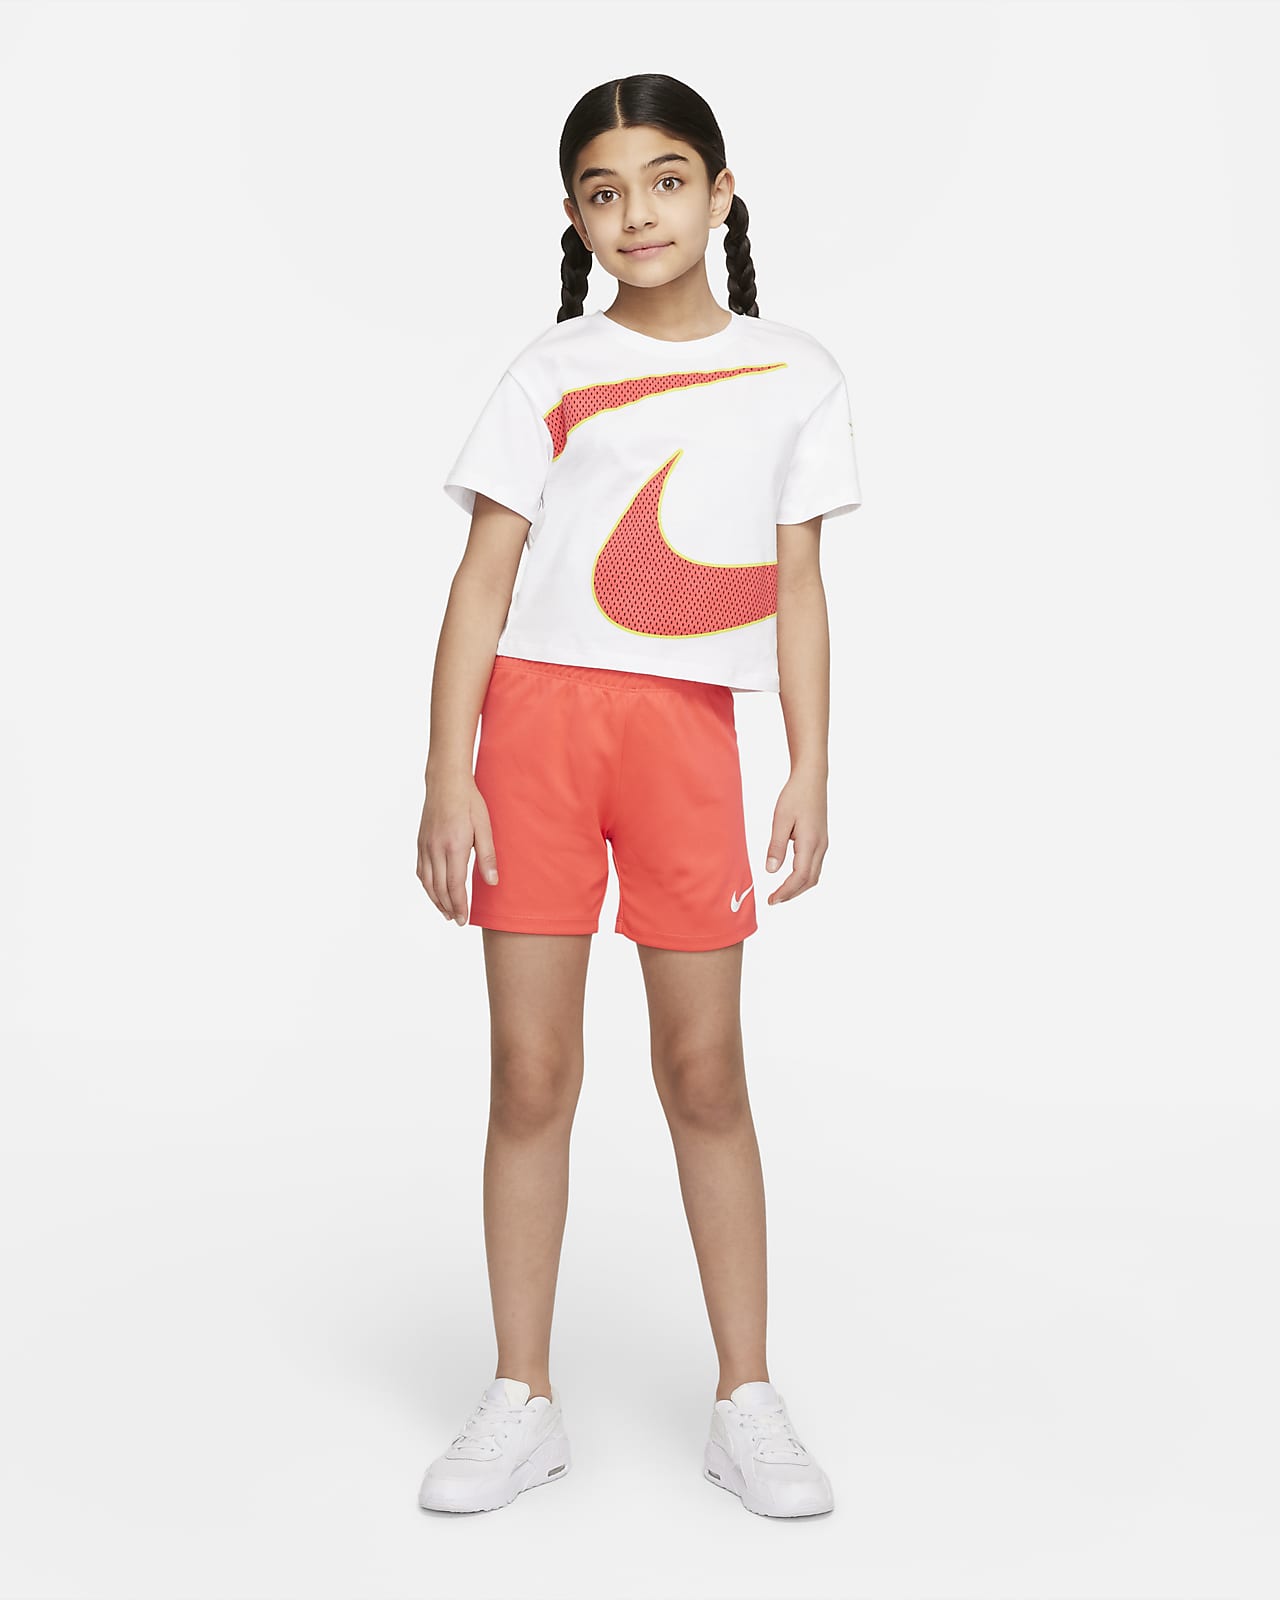 Ensemble tee-shirt et short en mesh Nike pour Jeune enfant